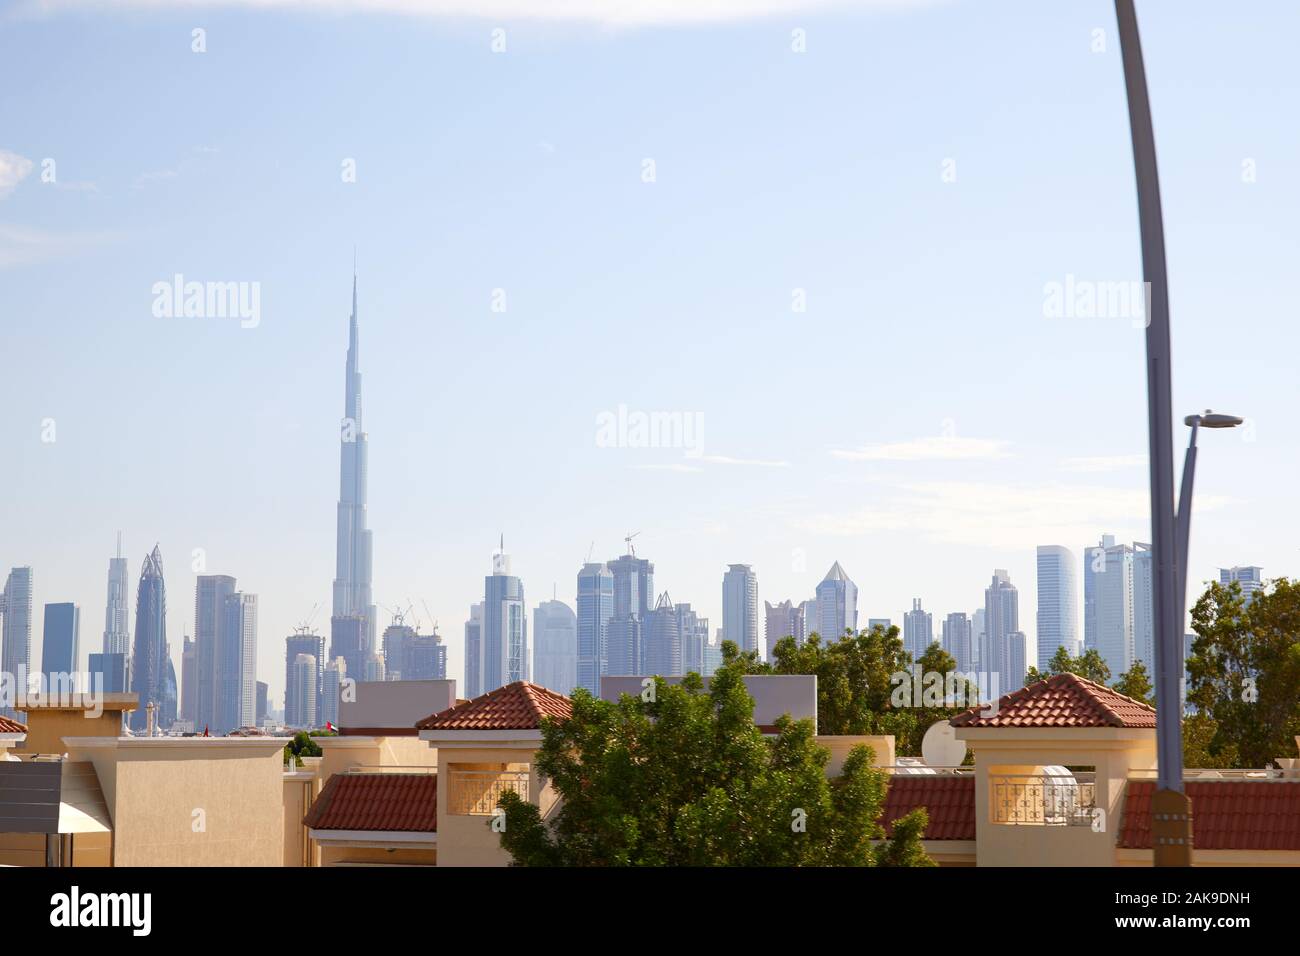 Il Burj Khalifa grattacielo, skyline di Dubai e case residenziali in una giornata di sole in Emirati Arabi Uniti Foto Stock